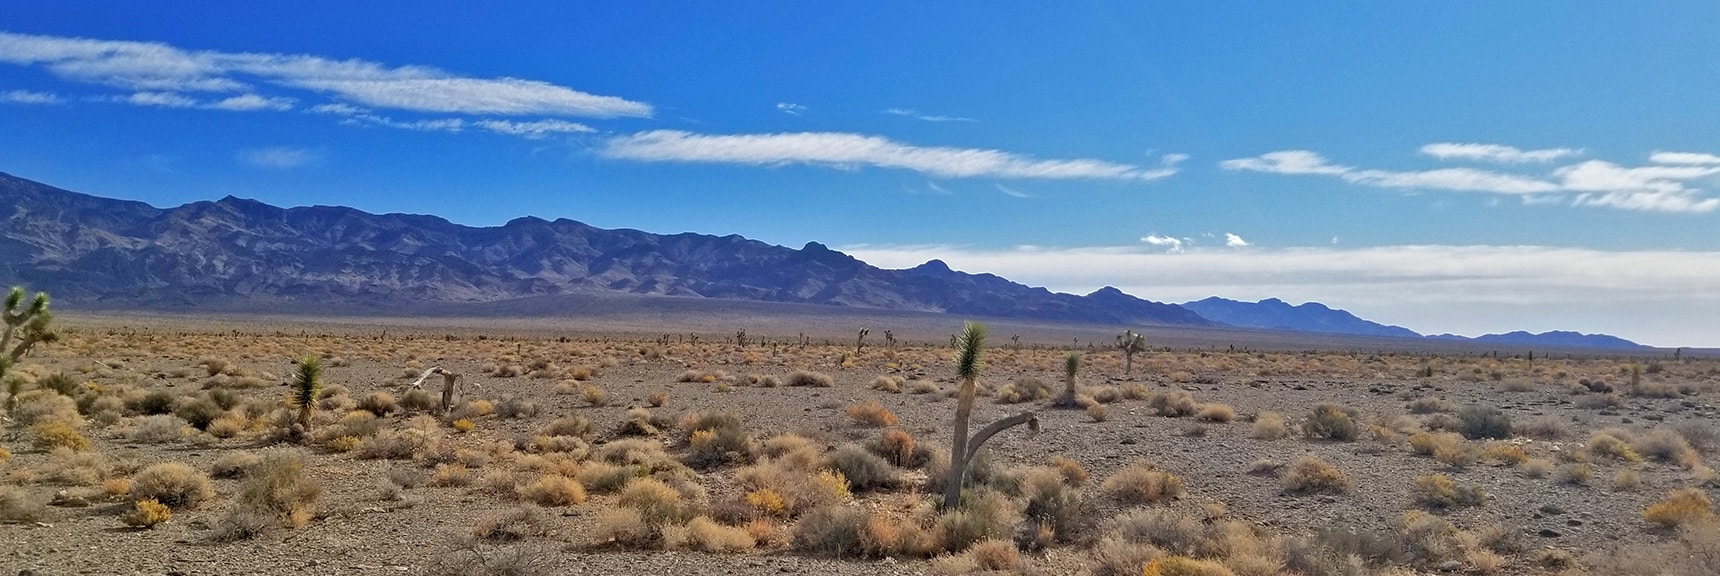 View of the Sheep Range from the Northwest corner to Gass Peak | Lower Alamo Road | Sheep Range | Desert National Wildlife Refuge, Nevada